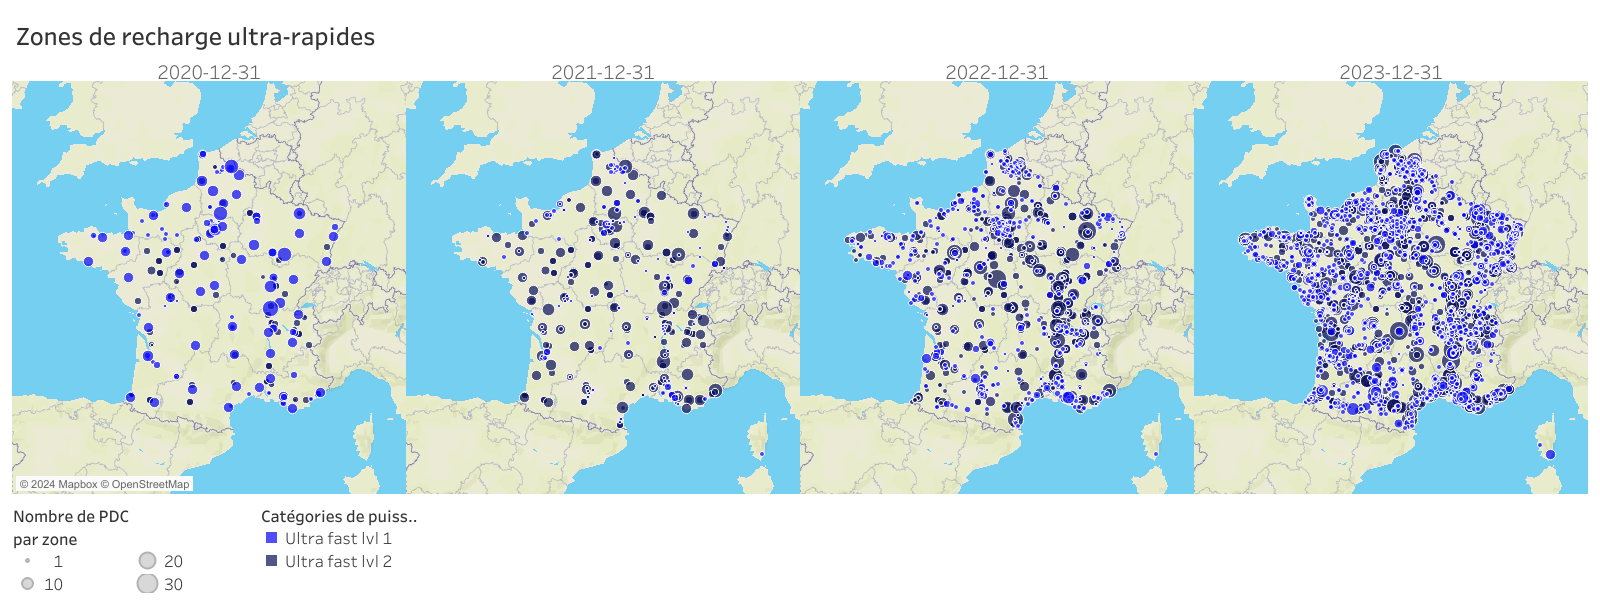 Carte de France montrant l'évolution de l'implantation de la recharge ultra rapide de 2020 à 2023